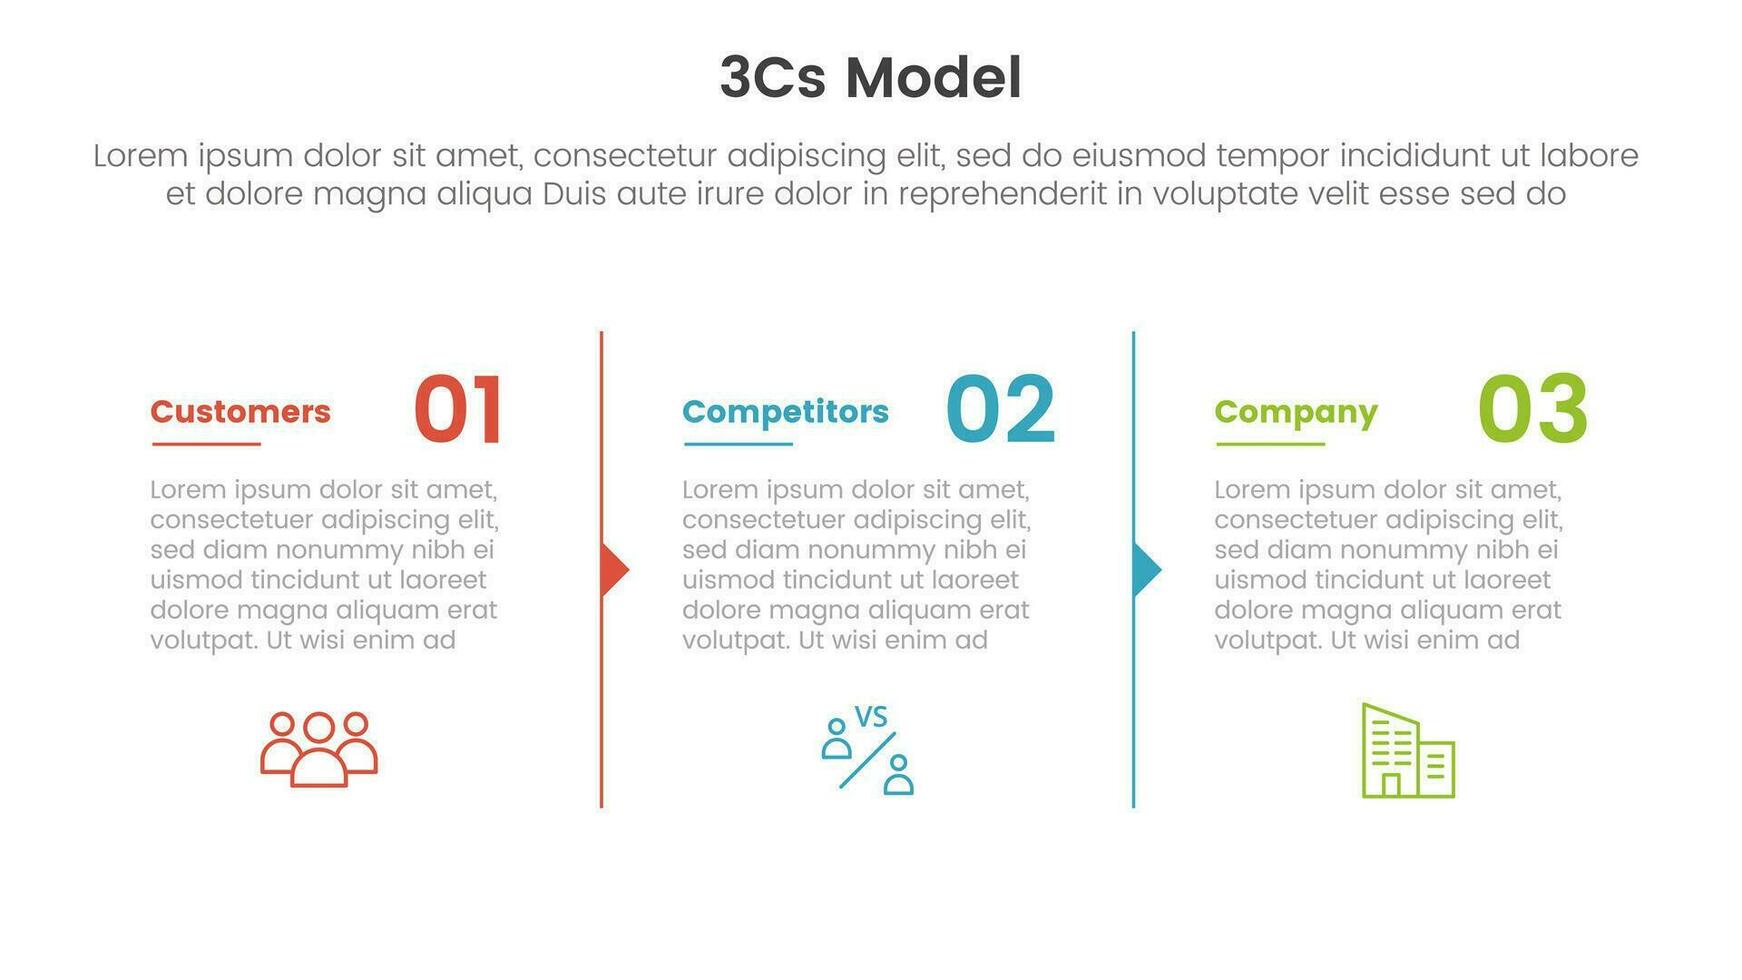 3cs modell företag modell ramverk infographic 3 punkt skede mall med kolumn beskrivning pil översikt för glida presentation vektor